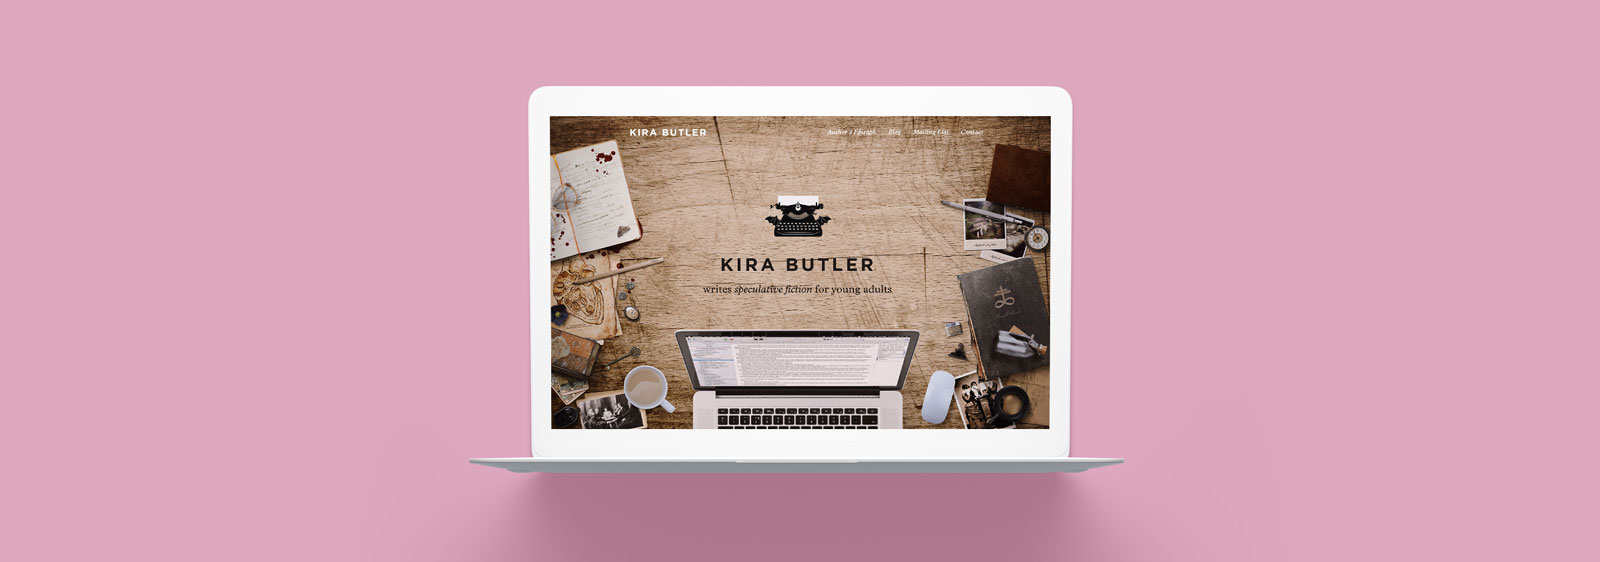 KiraButler.com website designed by Noisy Ghost Co.